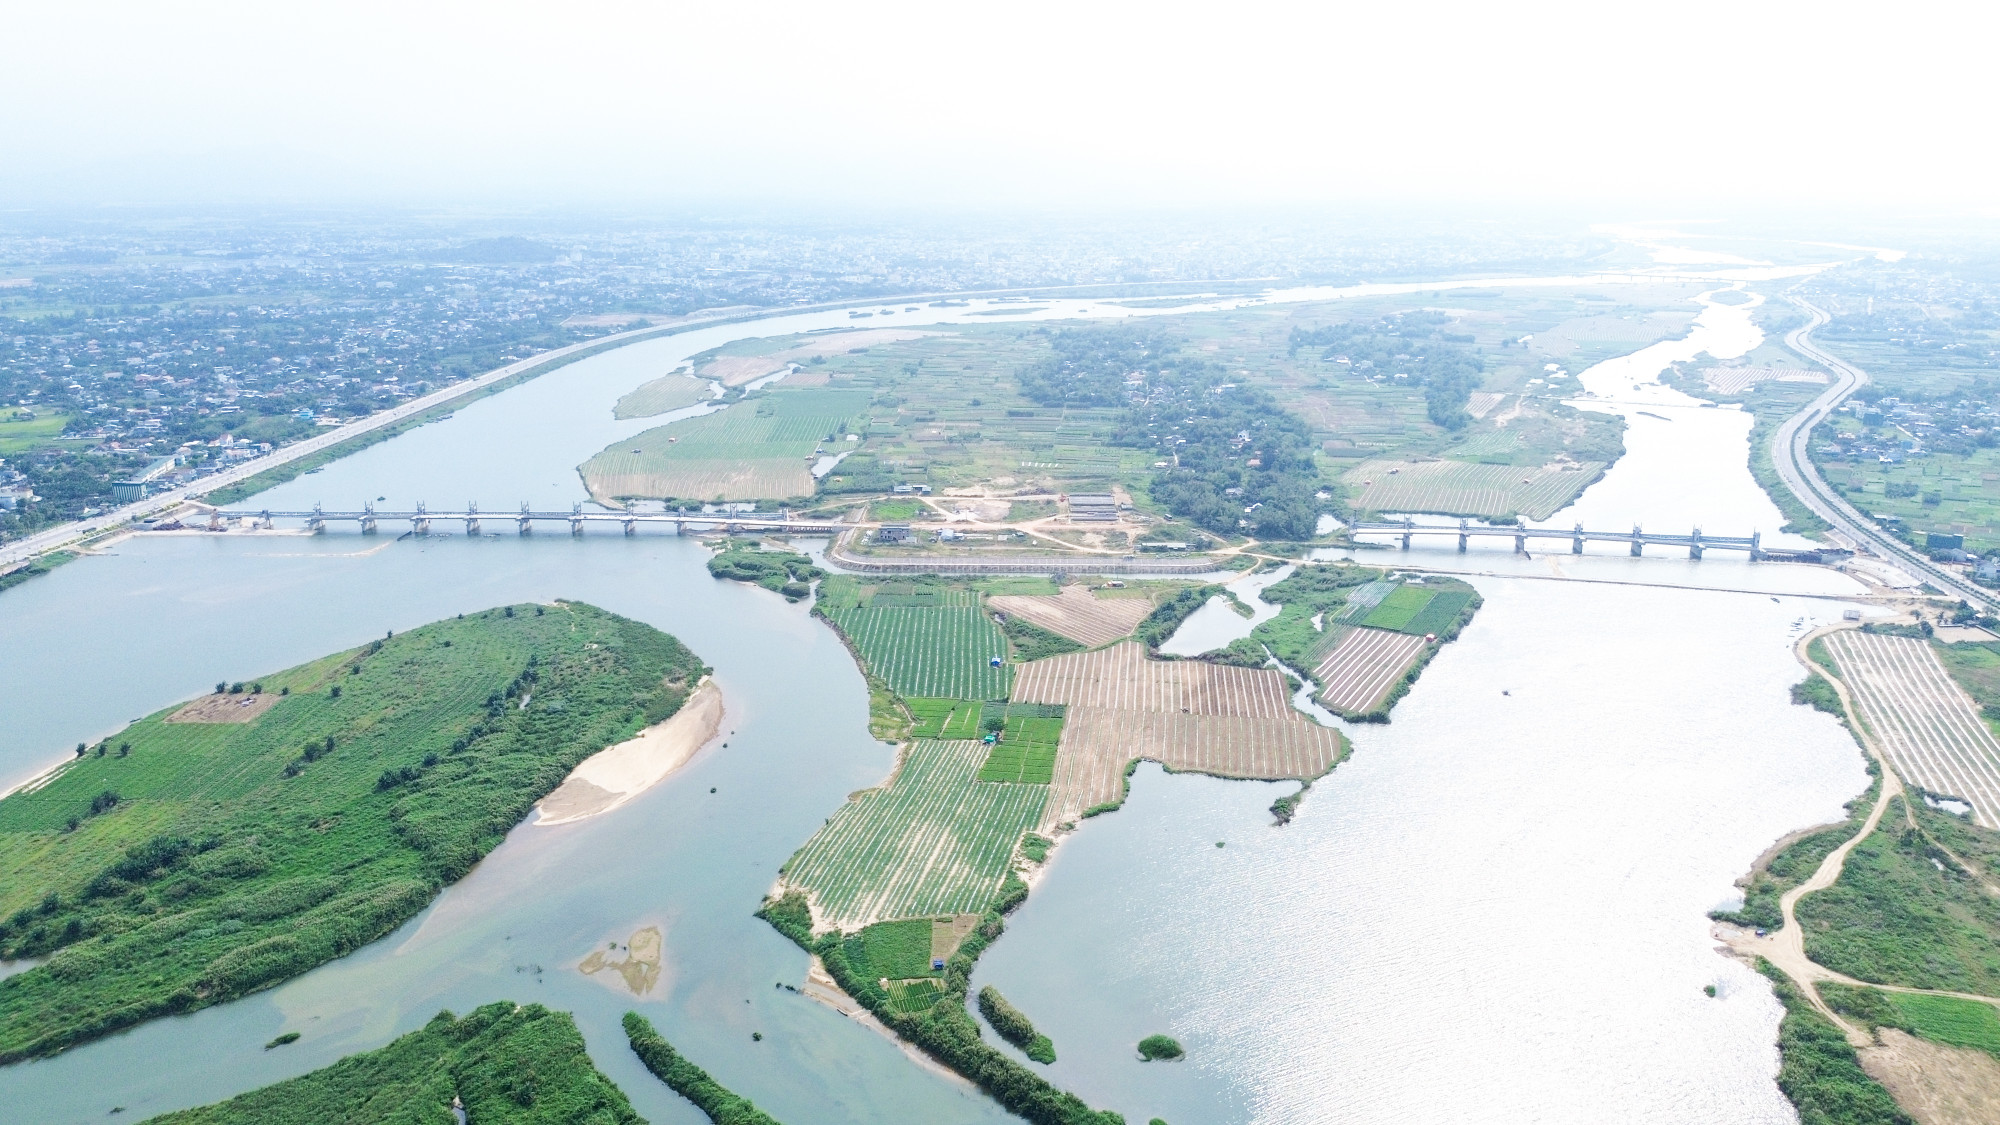 công trình đập dâng qua sông Trà Khúc, tổng vốn đầu tư gần 1.500 tỷ đồng nhìn từ trên cao 